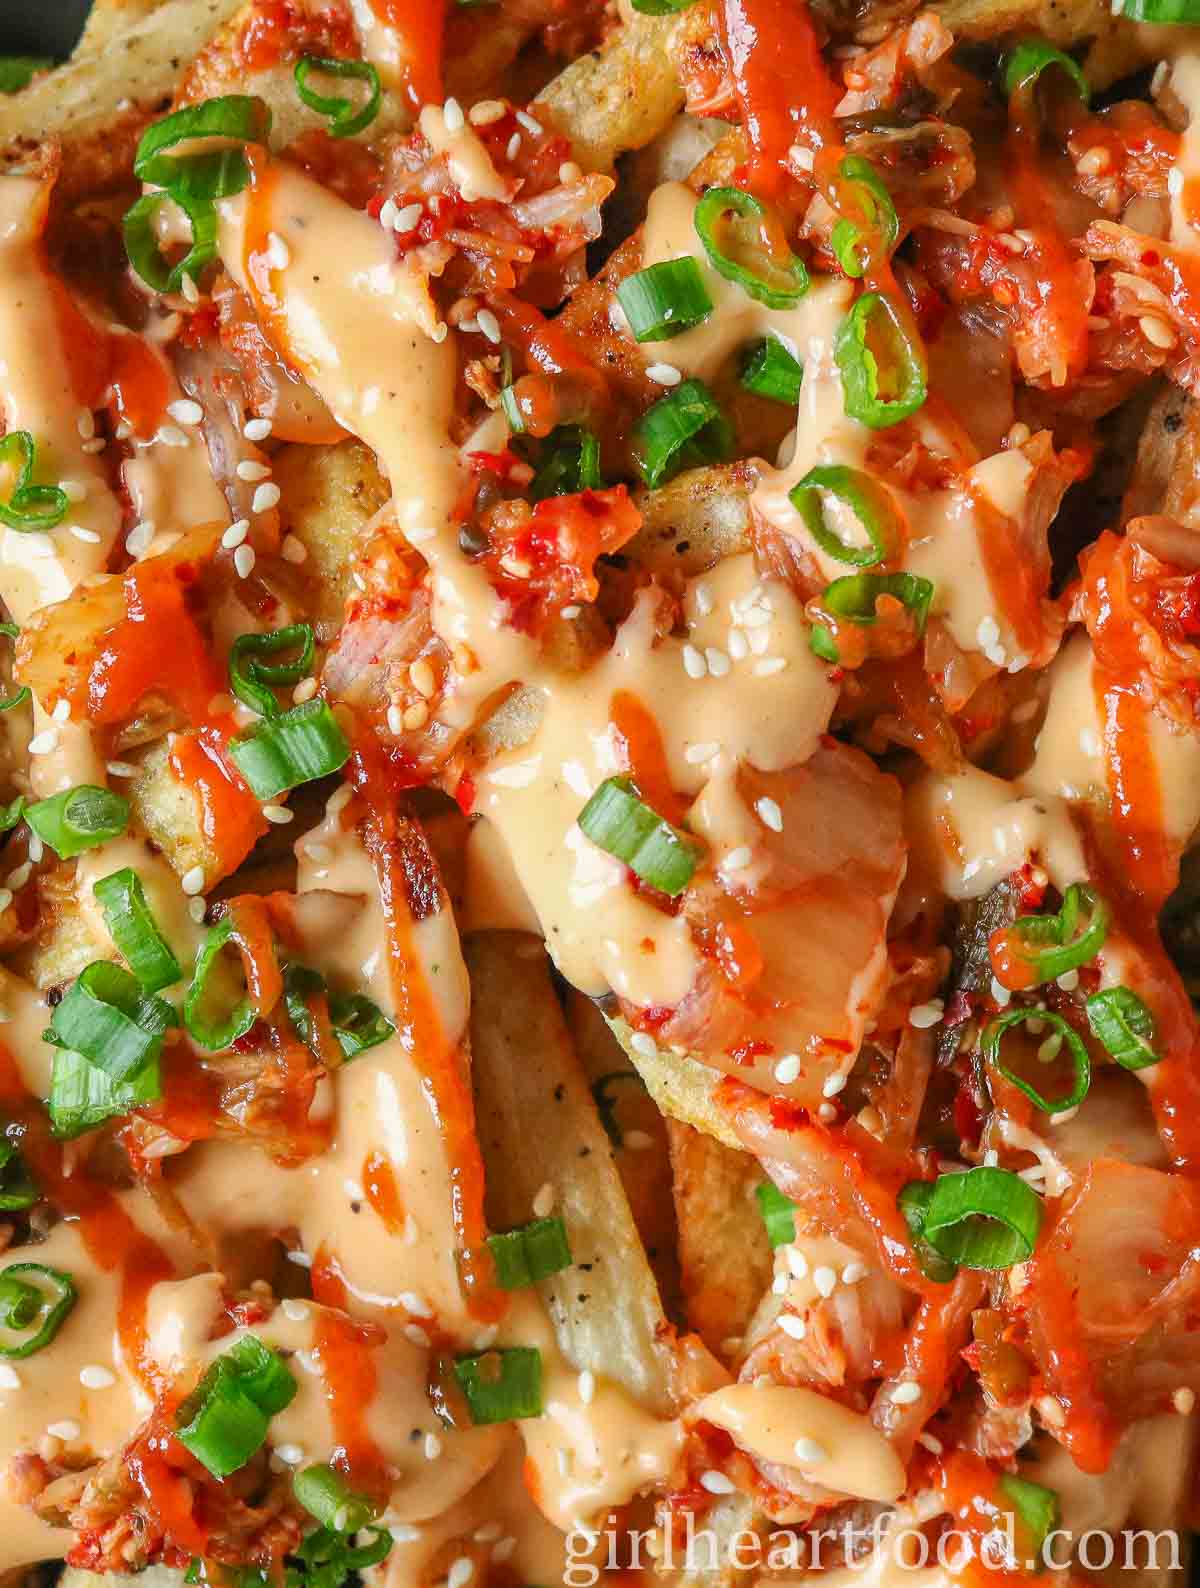 Tight close-up of cheesy kimchi fries.